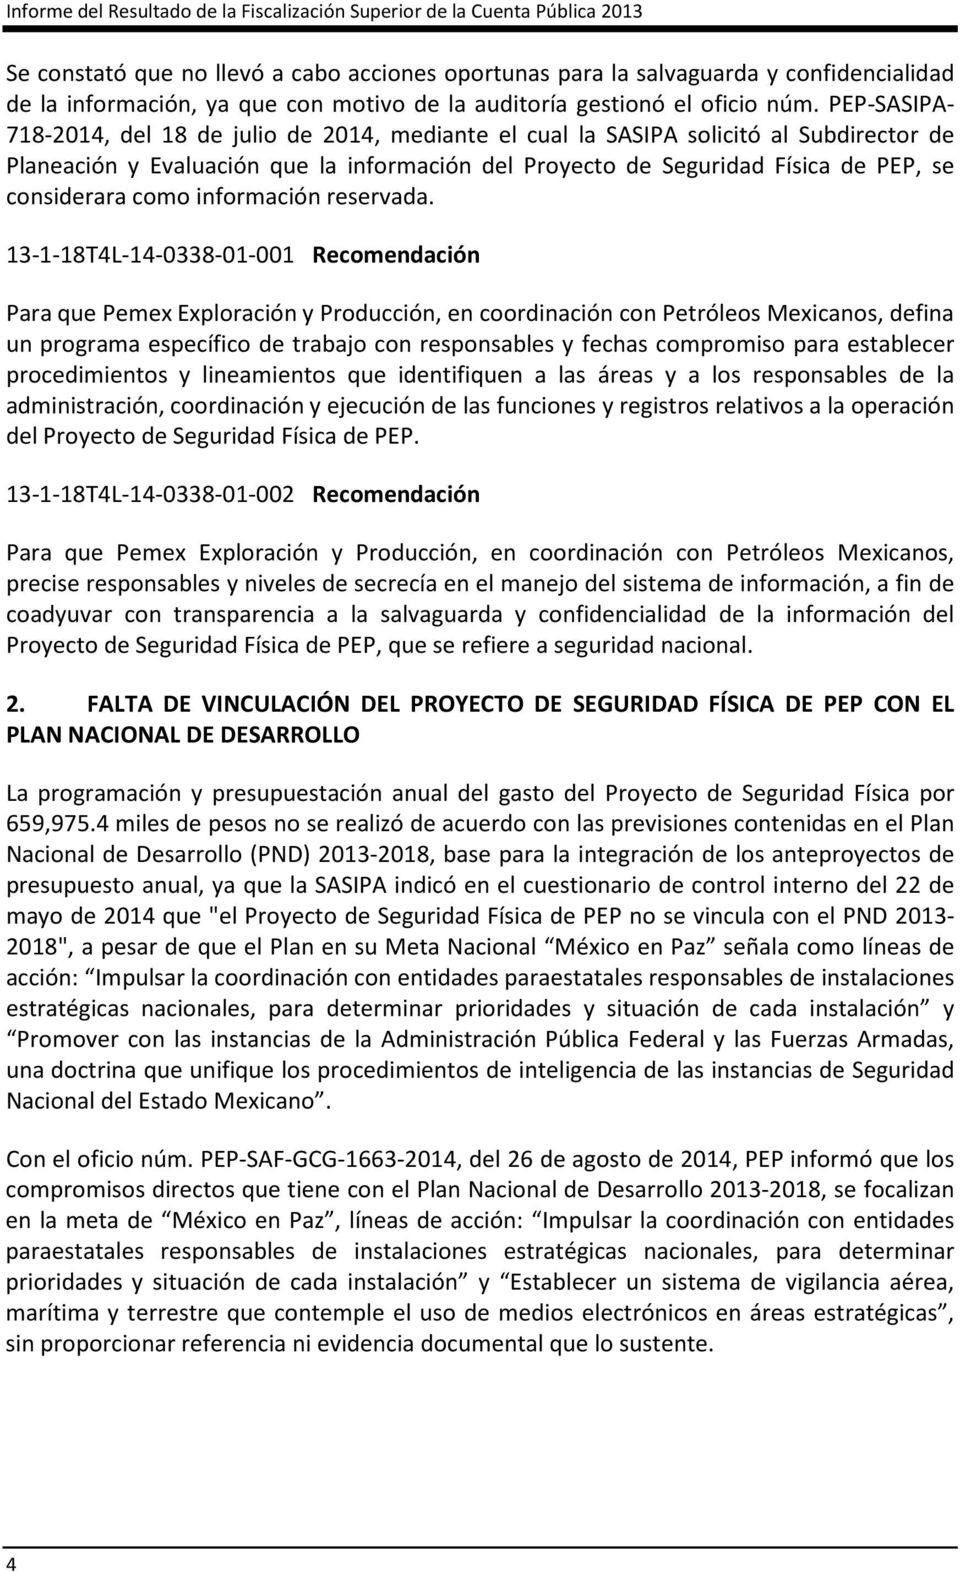 PEP-SASIPA- 718-2014, del 18 de julio de 2014, mediante el cual la SASIPA solicitó al Subdirector de Planeación y Evaluación que la información del Proyecto de Seguridad Física de PEP, se considerara